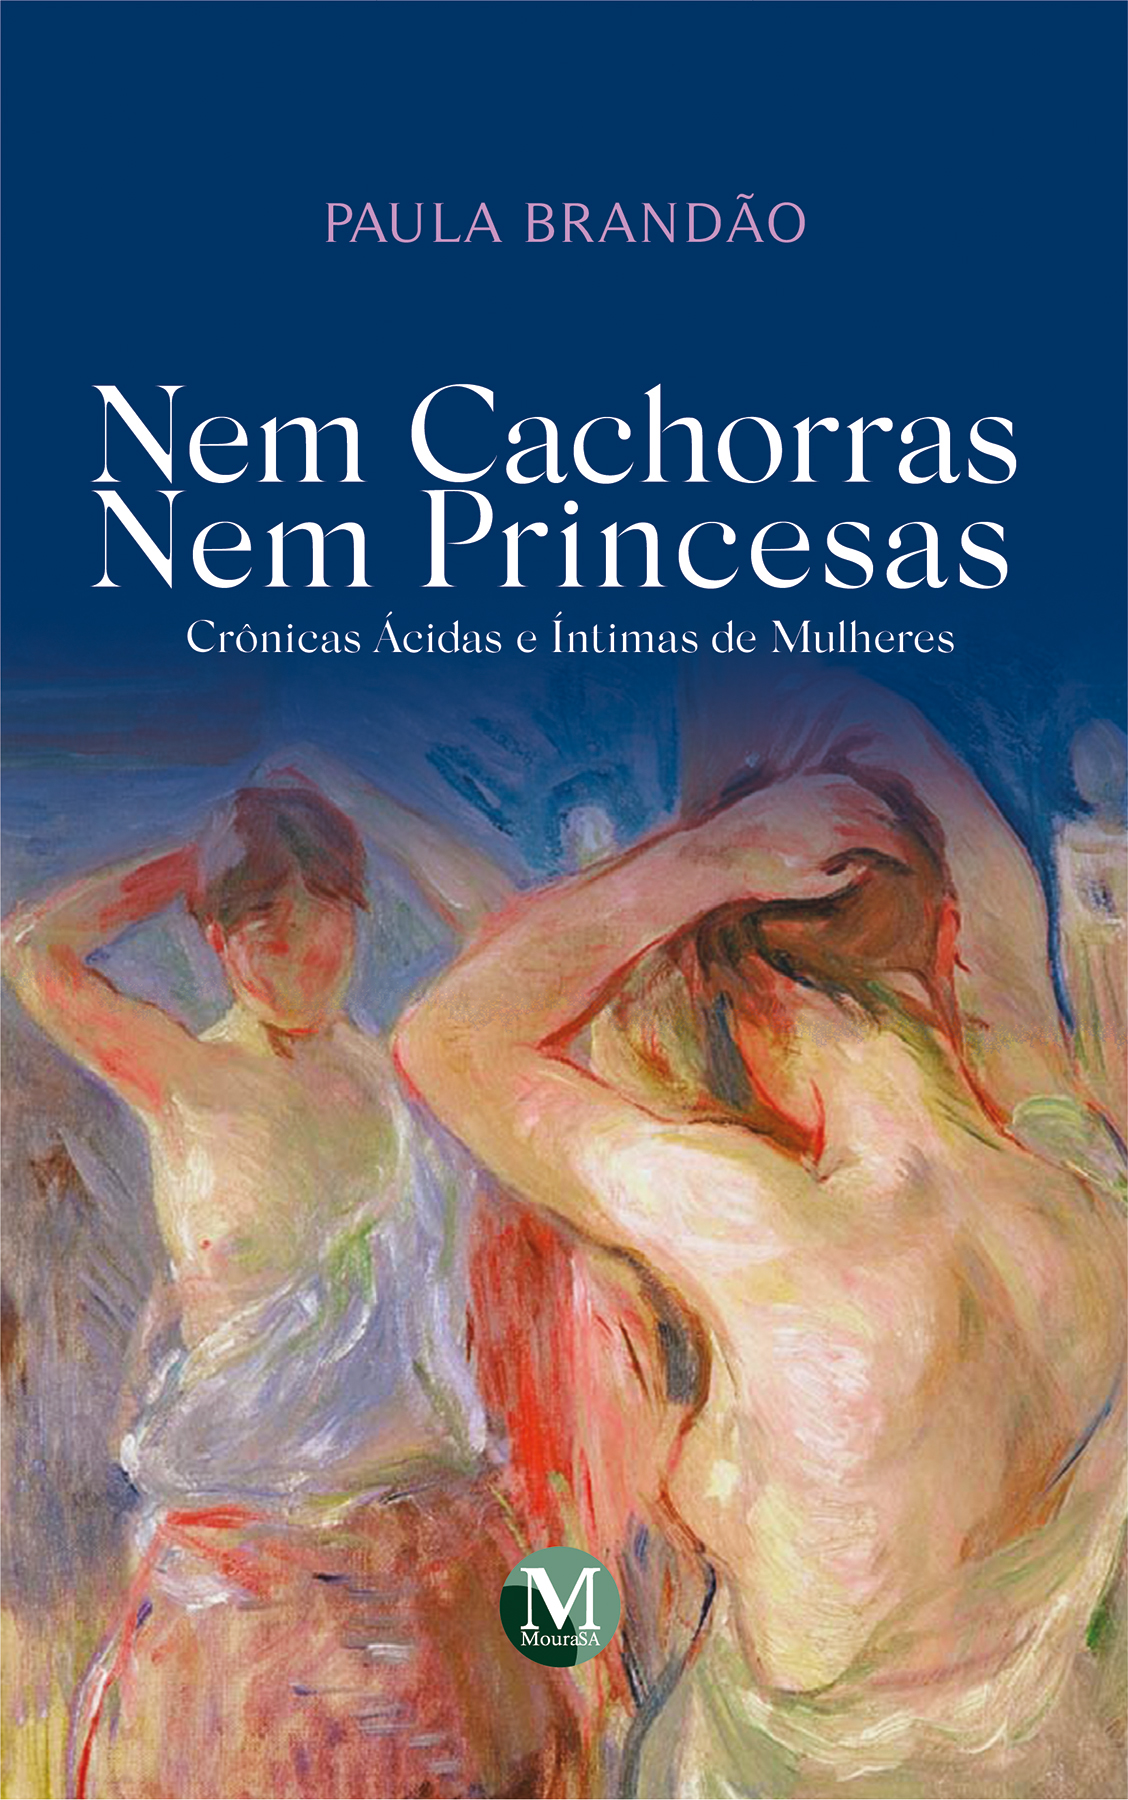 Capa do livro: NEM CACHORRAS NEM PRINCESAS <br> crônicas ácidas e íntimas de mulheres